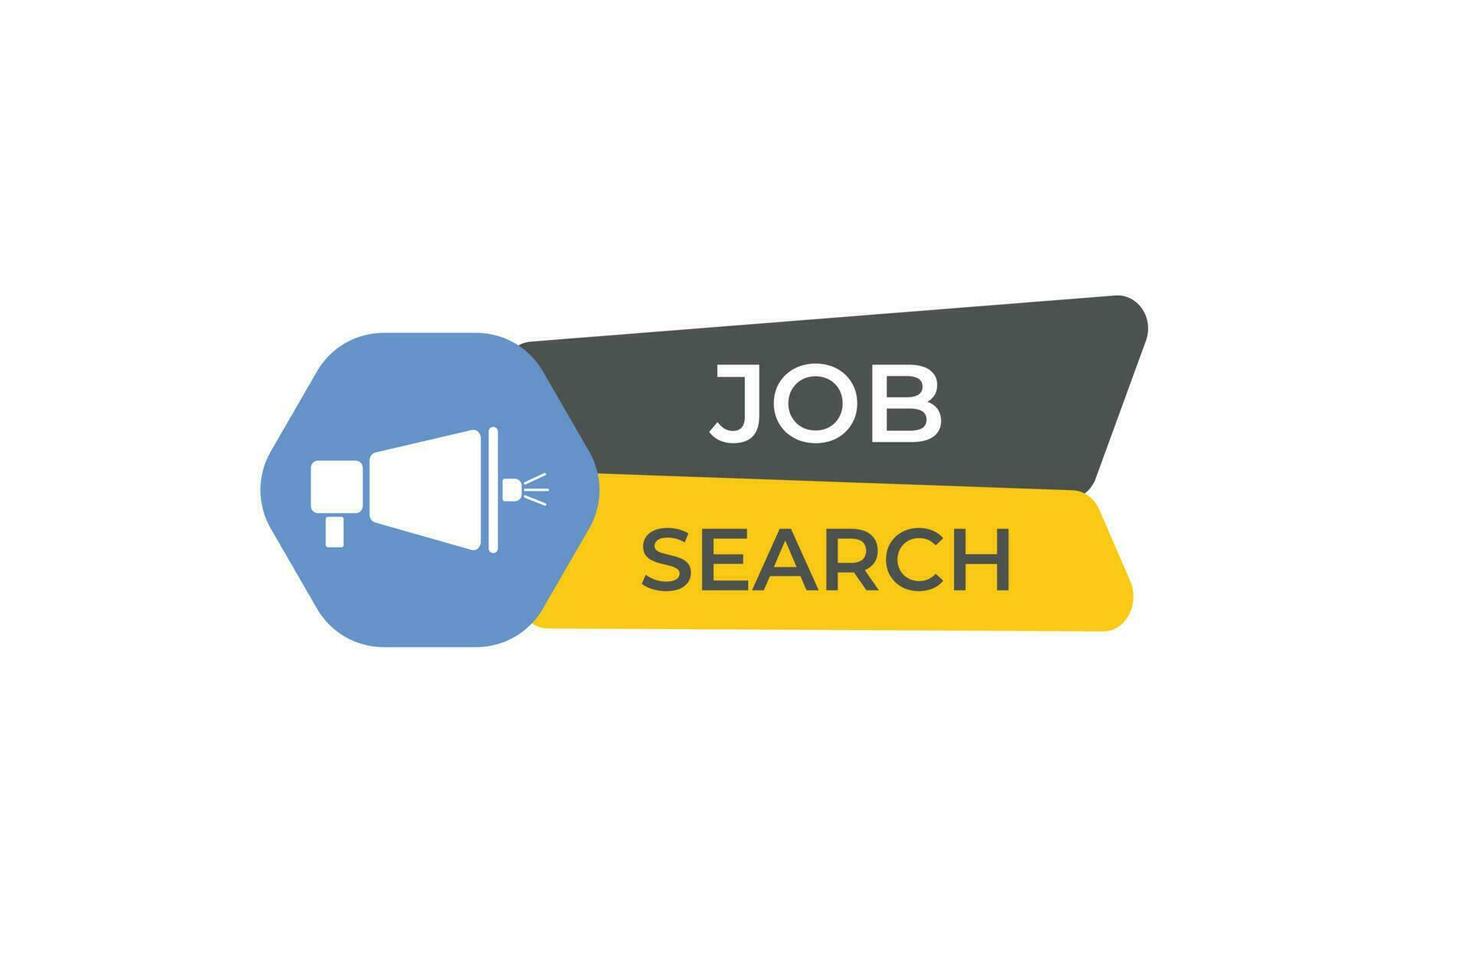 Job Suche Taste. Rede Blase, Banner Etikette Job Suche vektor